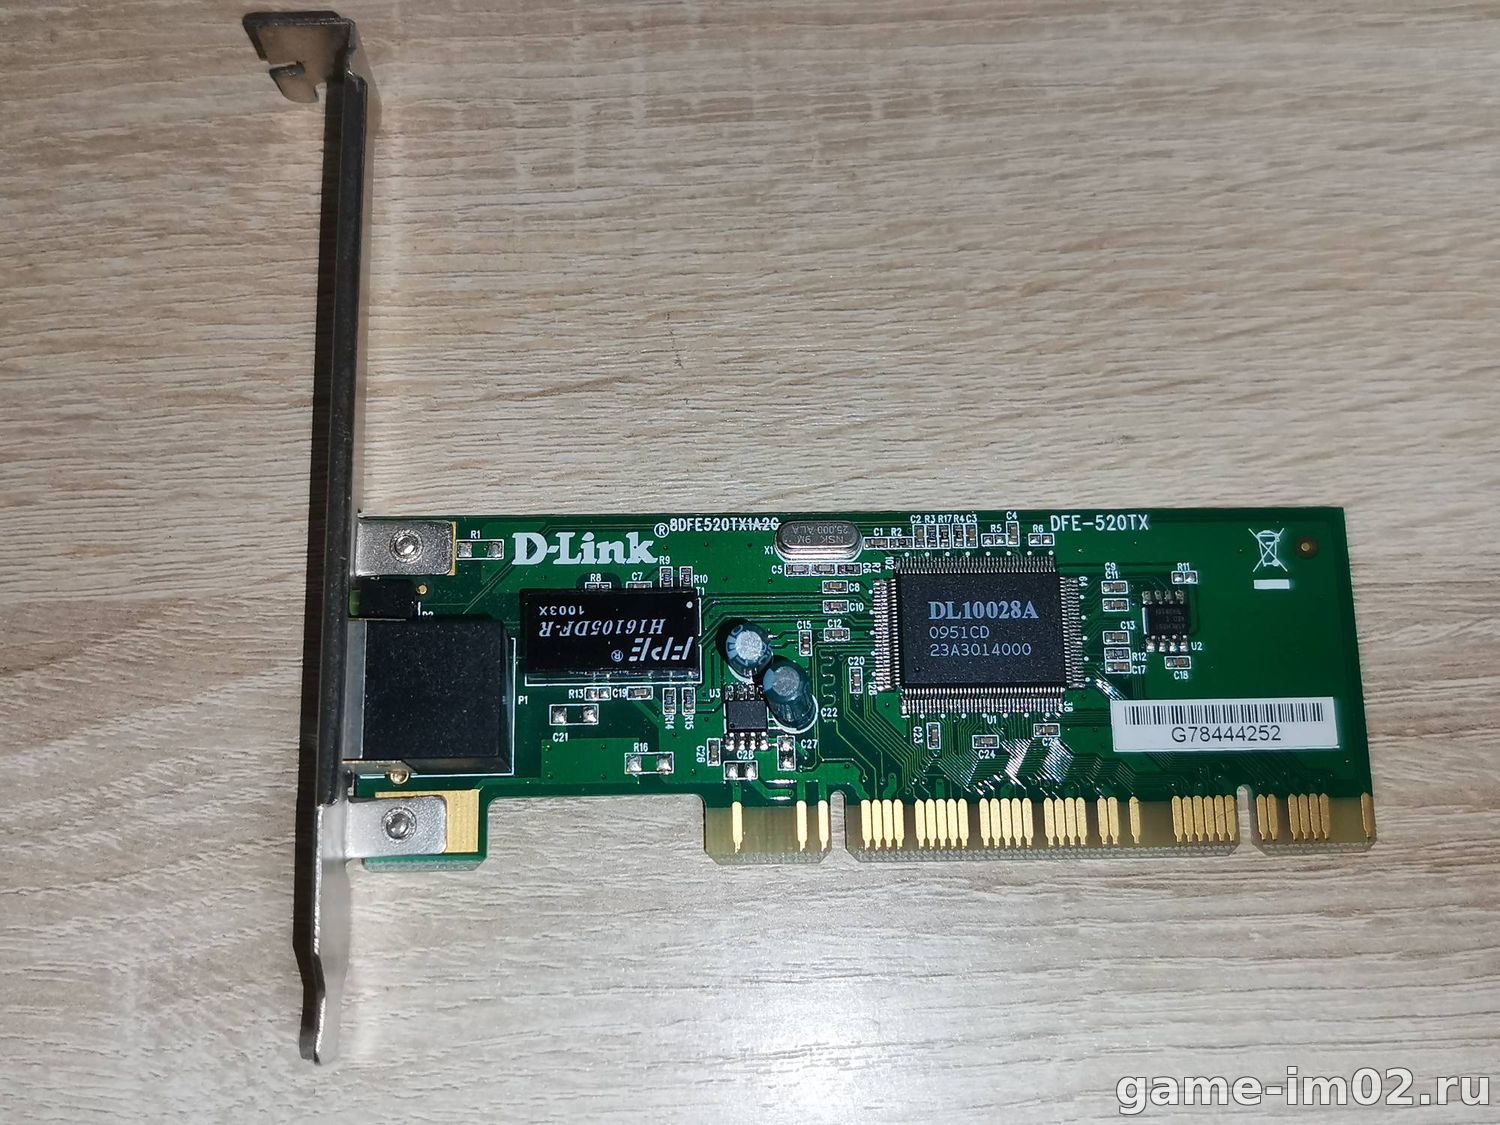 D link dfe 520tx. D-link DFE-530tx (OEM) PCI Express. D-link DFE-530tx. D link DFE 530 TX 8dfe530tx6c1.